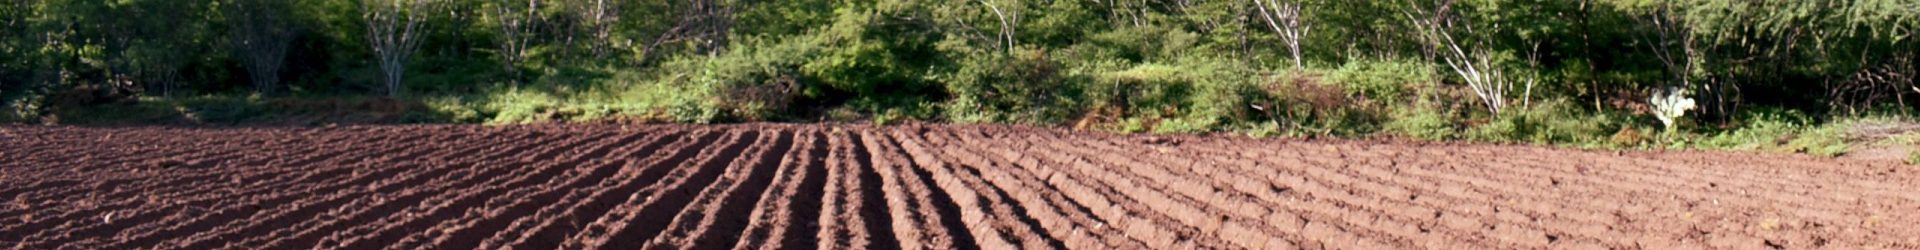 Simposio: Sistemas Agroforestales de México y su aporte en la resolución de problemas socioecológicos